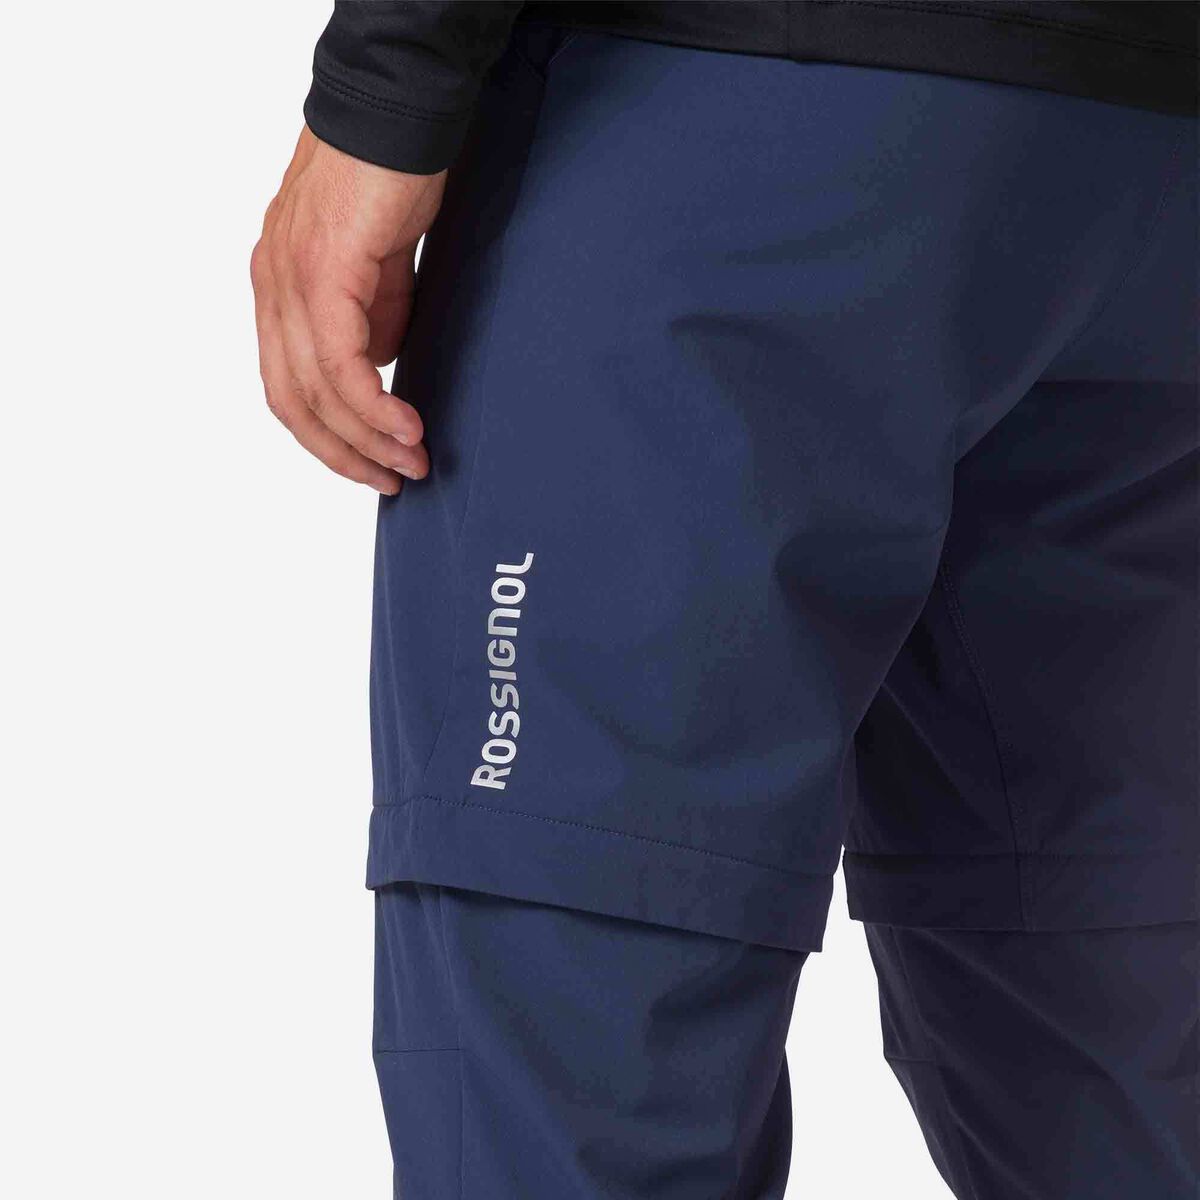 Men's lightweight convertible zip-off pants